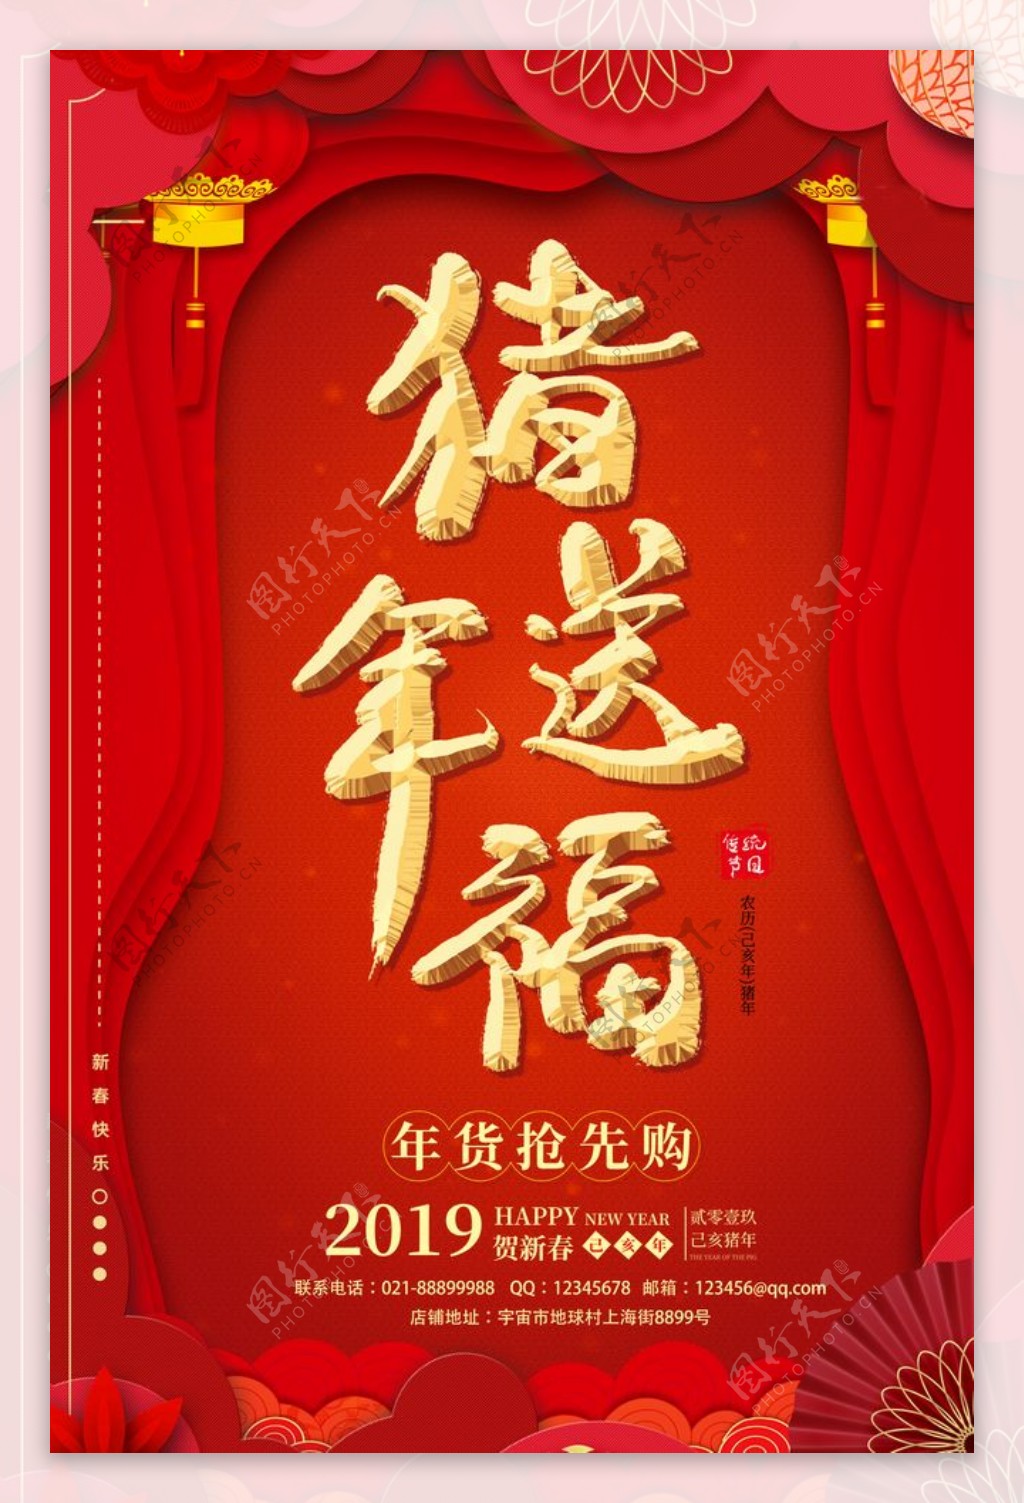 红色大气猪年送福春节海报